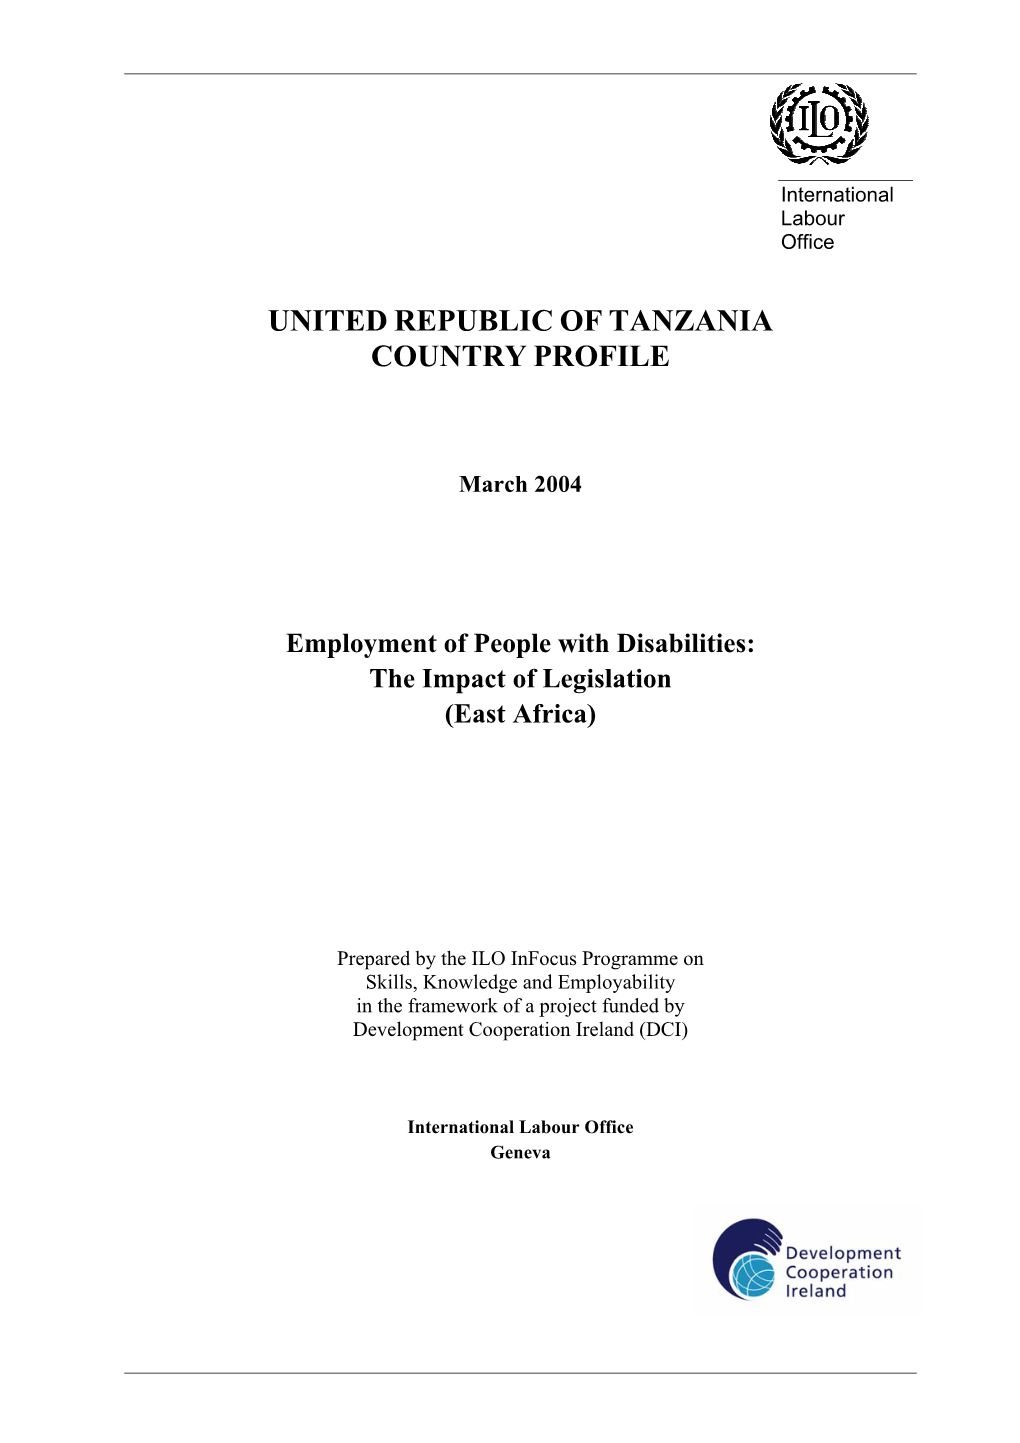 United Republic of Tanzania Country Profile